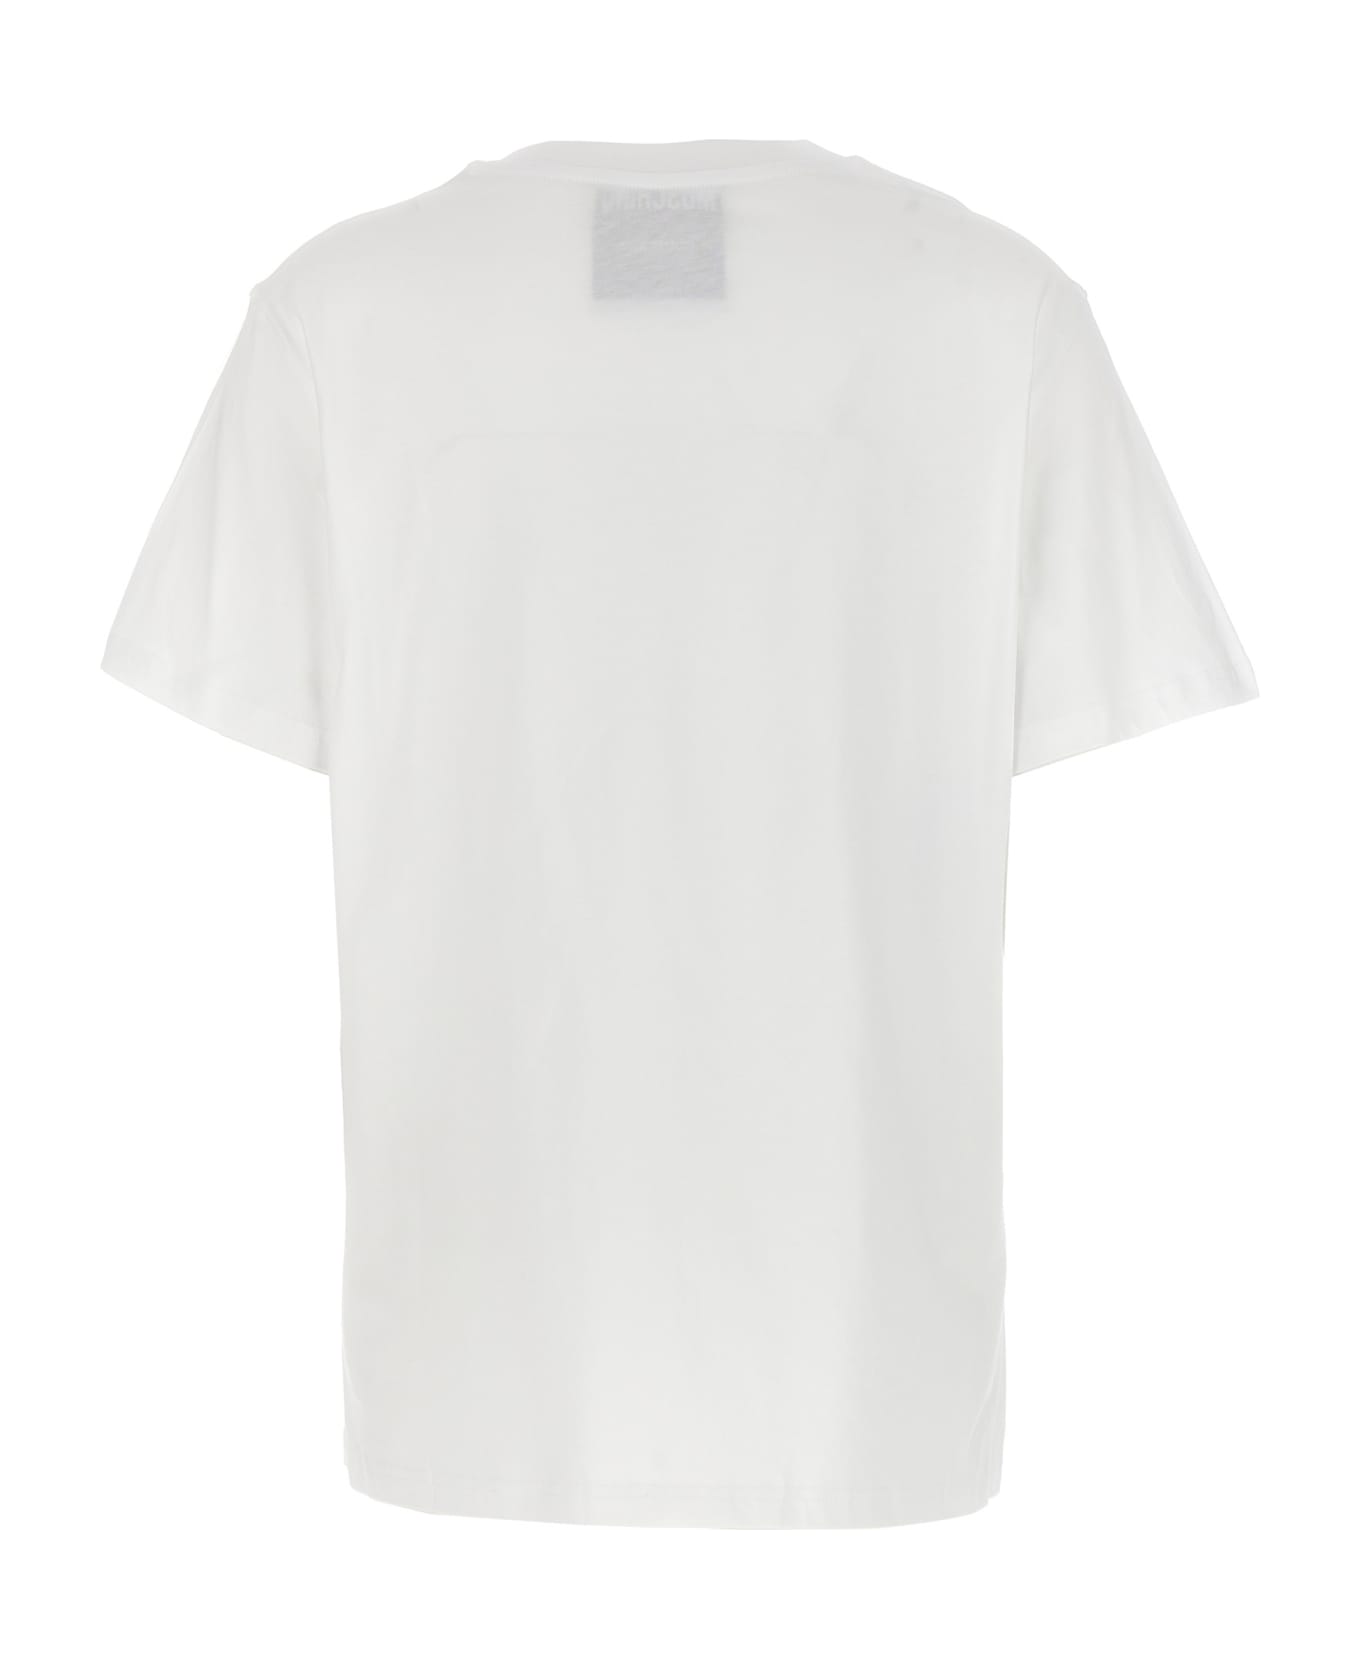 Moschino 'in Love We Trust' T-shirt Moschino - WHITE Tシャツ